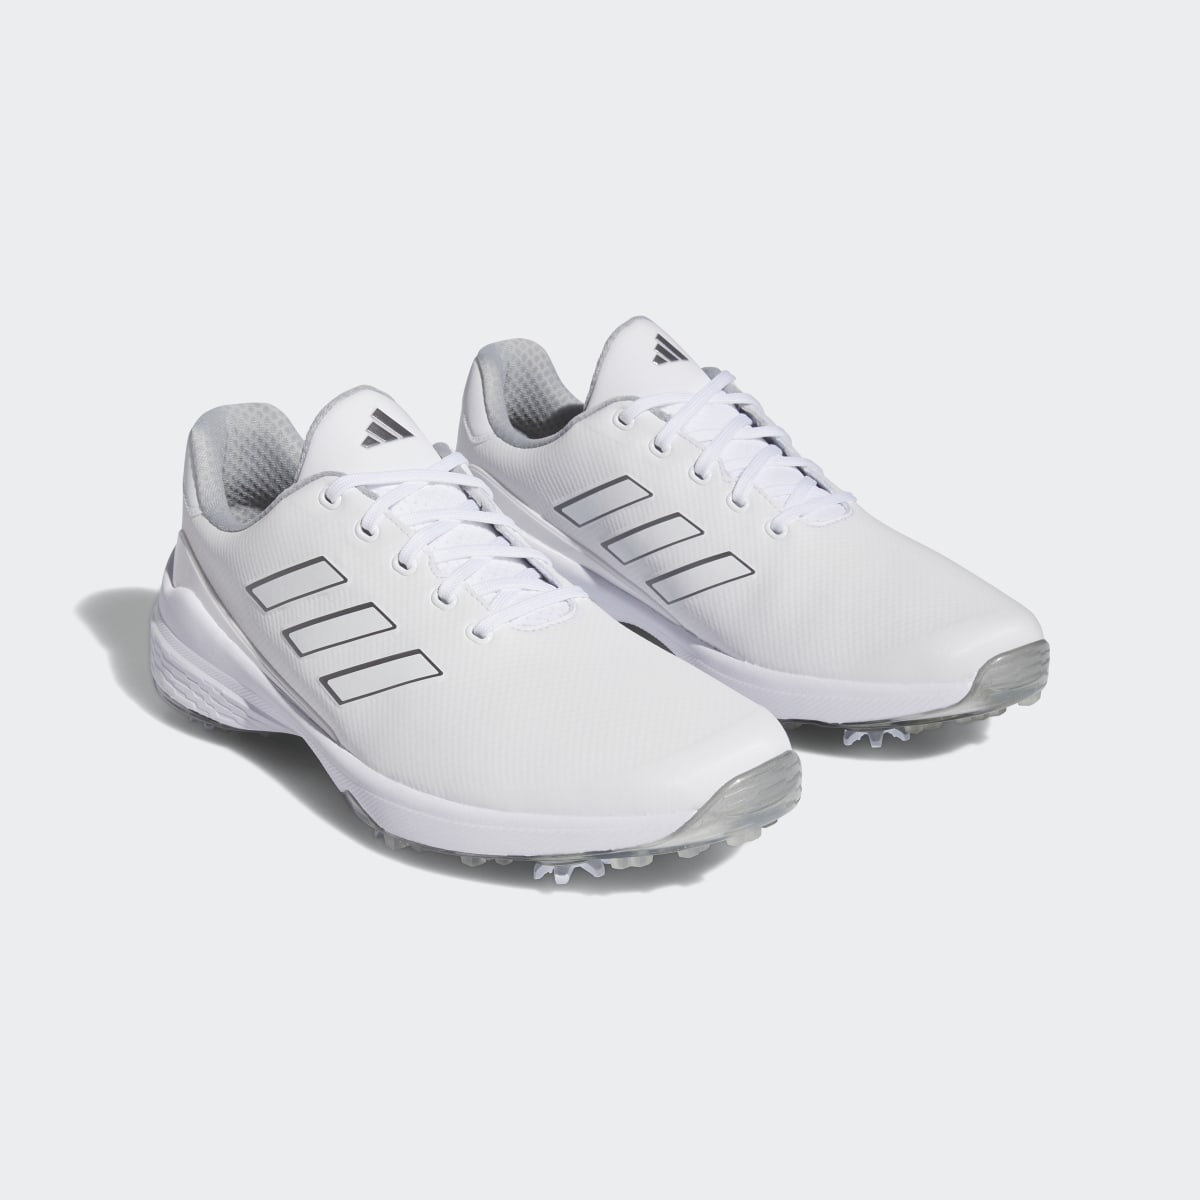 Adidas ZG23 Golf Shoes. 5